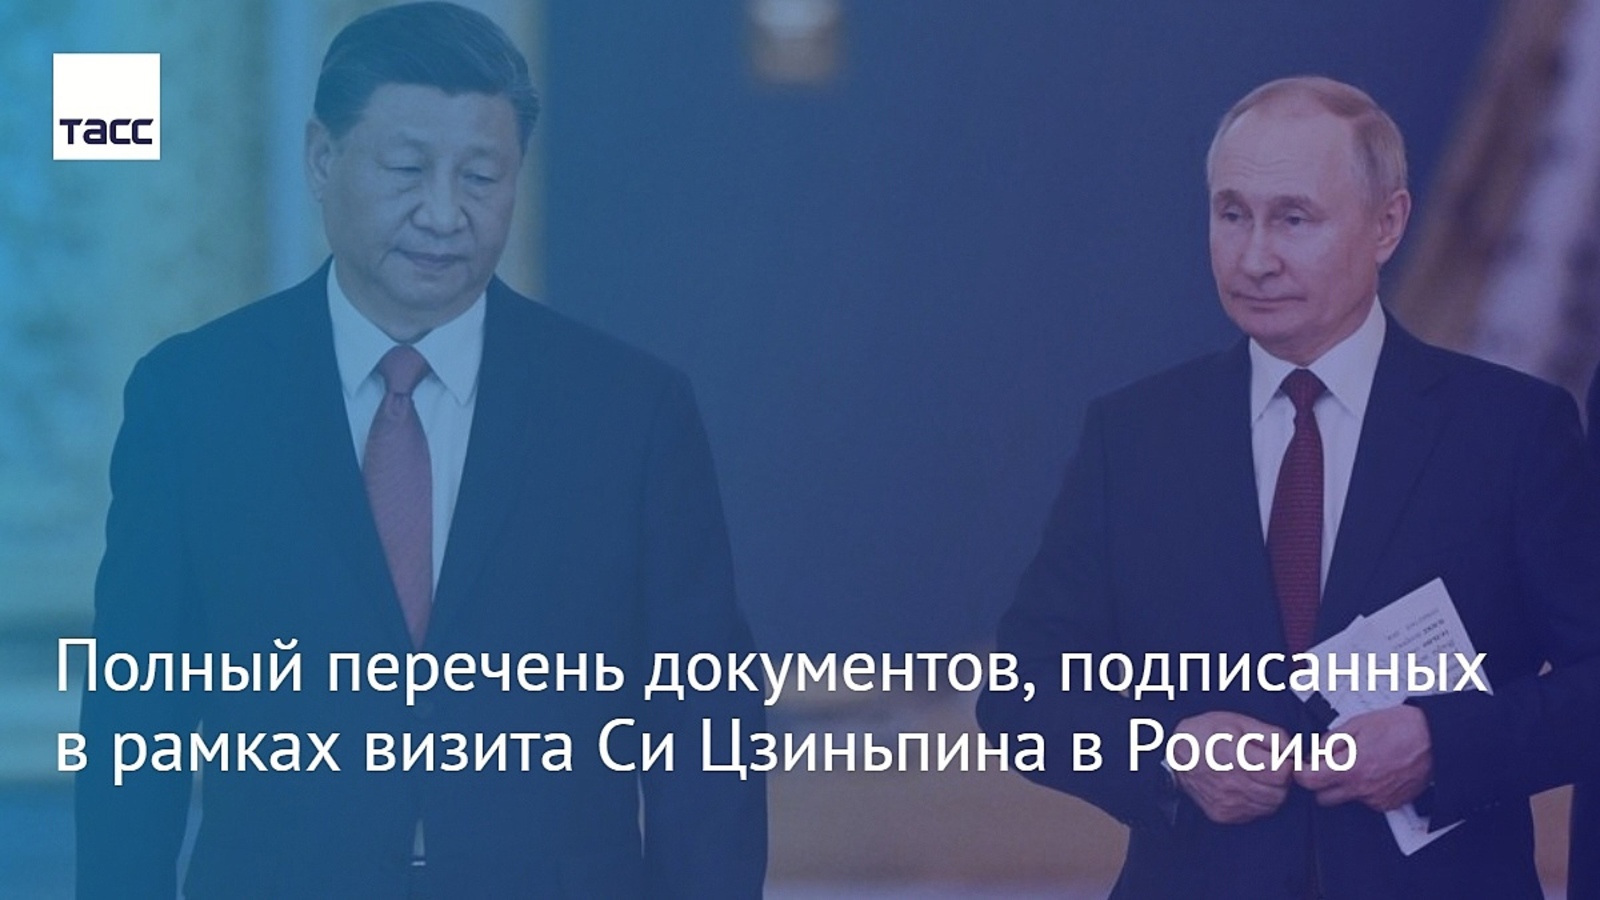 Полный перечень документов, подписанных в рамках визита Си Цзиньпина в Россию